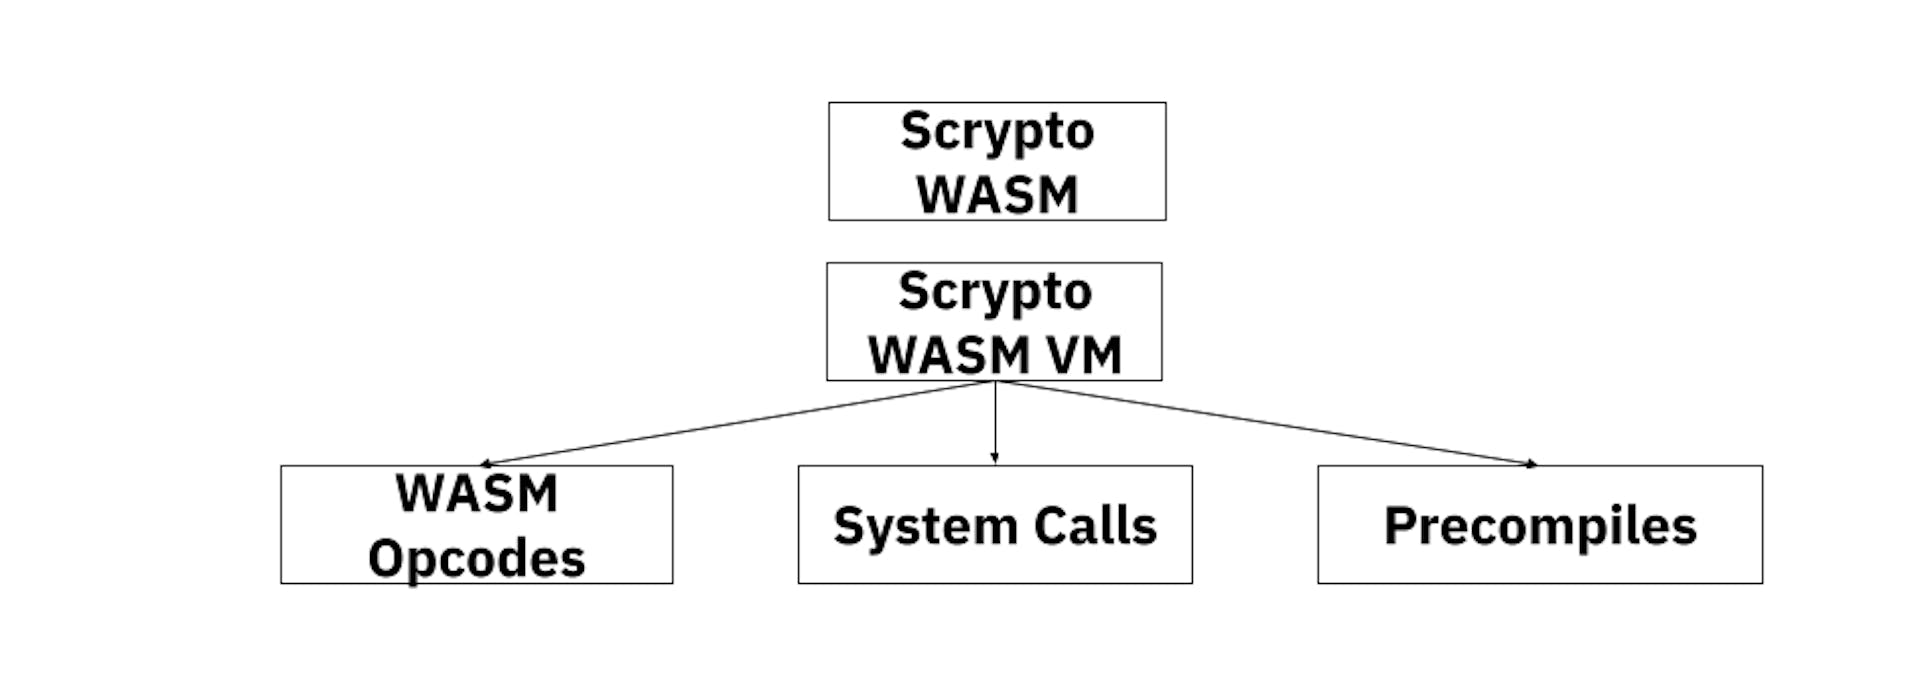 Scrypto WASM VM Modeli